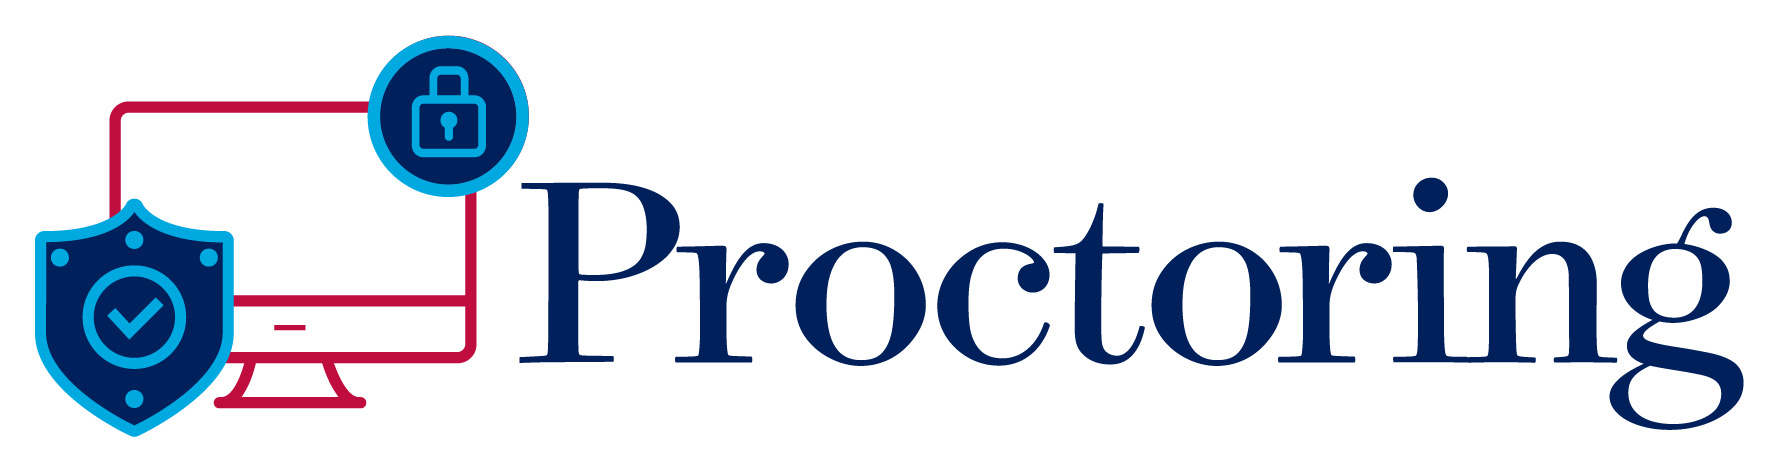 Proctoring logo